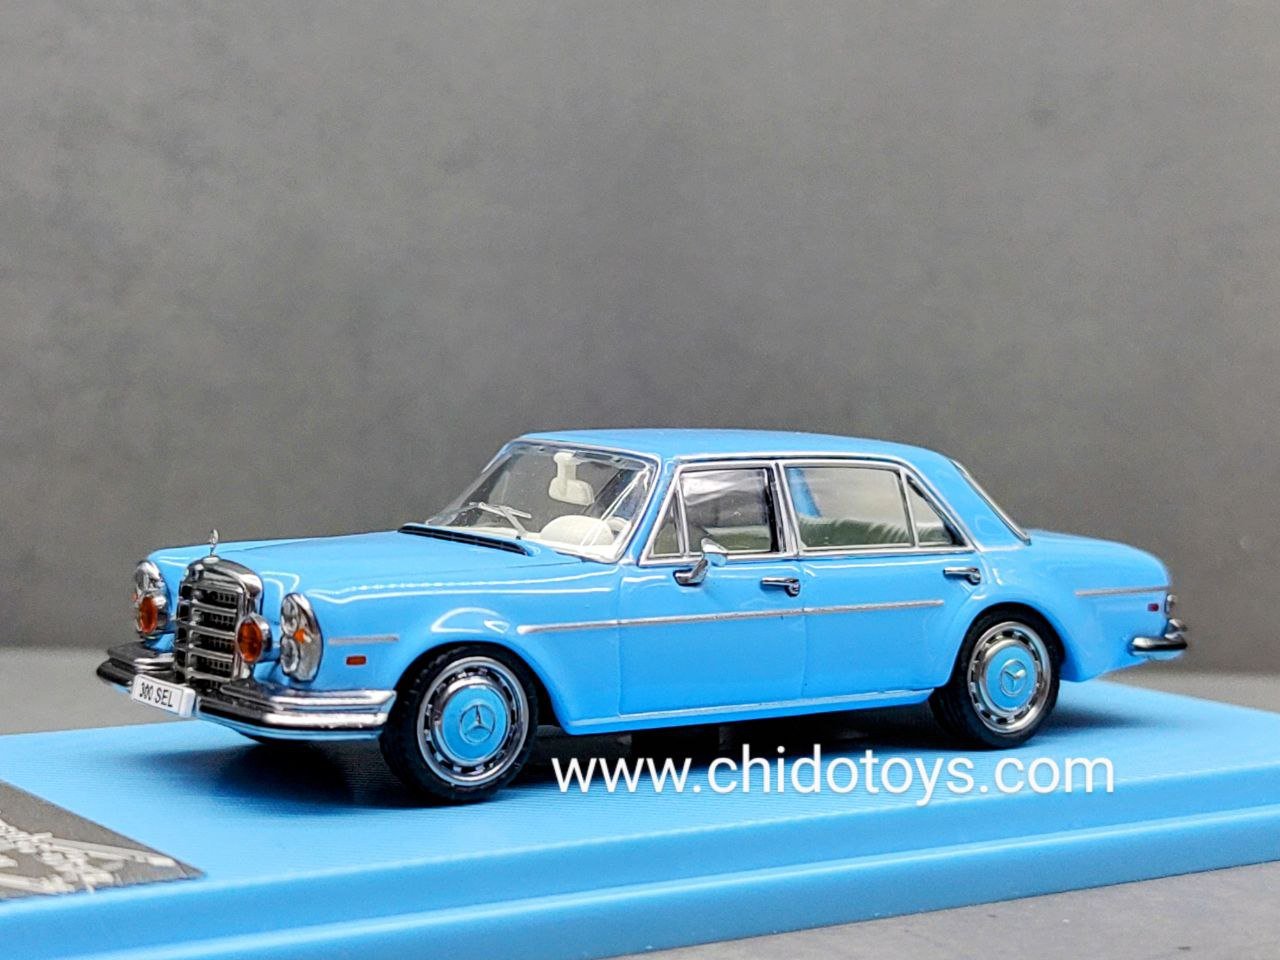 Auto a escala marca Liberty64, Modelo Mercedes Benz 300SEL - Chido Toys